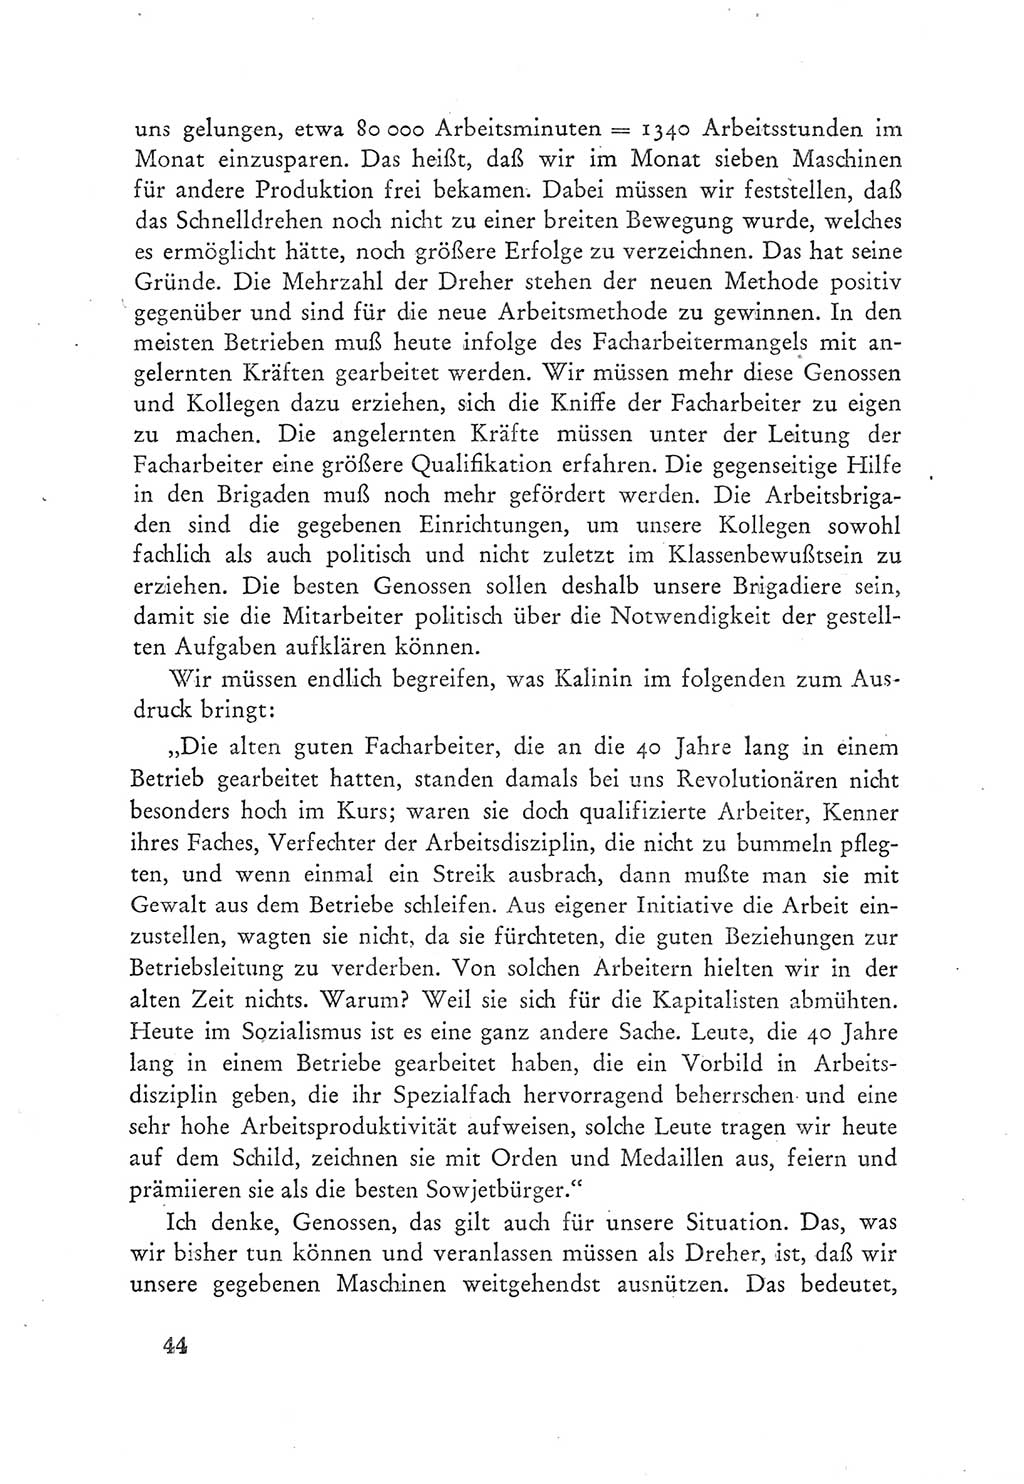 Protokoll der Verhandlungen des Ⅲ. Parteitages der Sozialistischen Einheitspartei Deutschlands (SED) [Deutsche Demokratische Republik (DDR)] 1950, Band 2, Seite 44 (Prot. Verh. Ⅲ. PT SED DDR 1950, Bd. 2, S. 44)